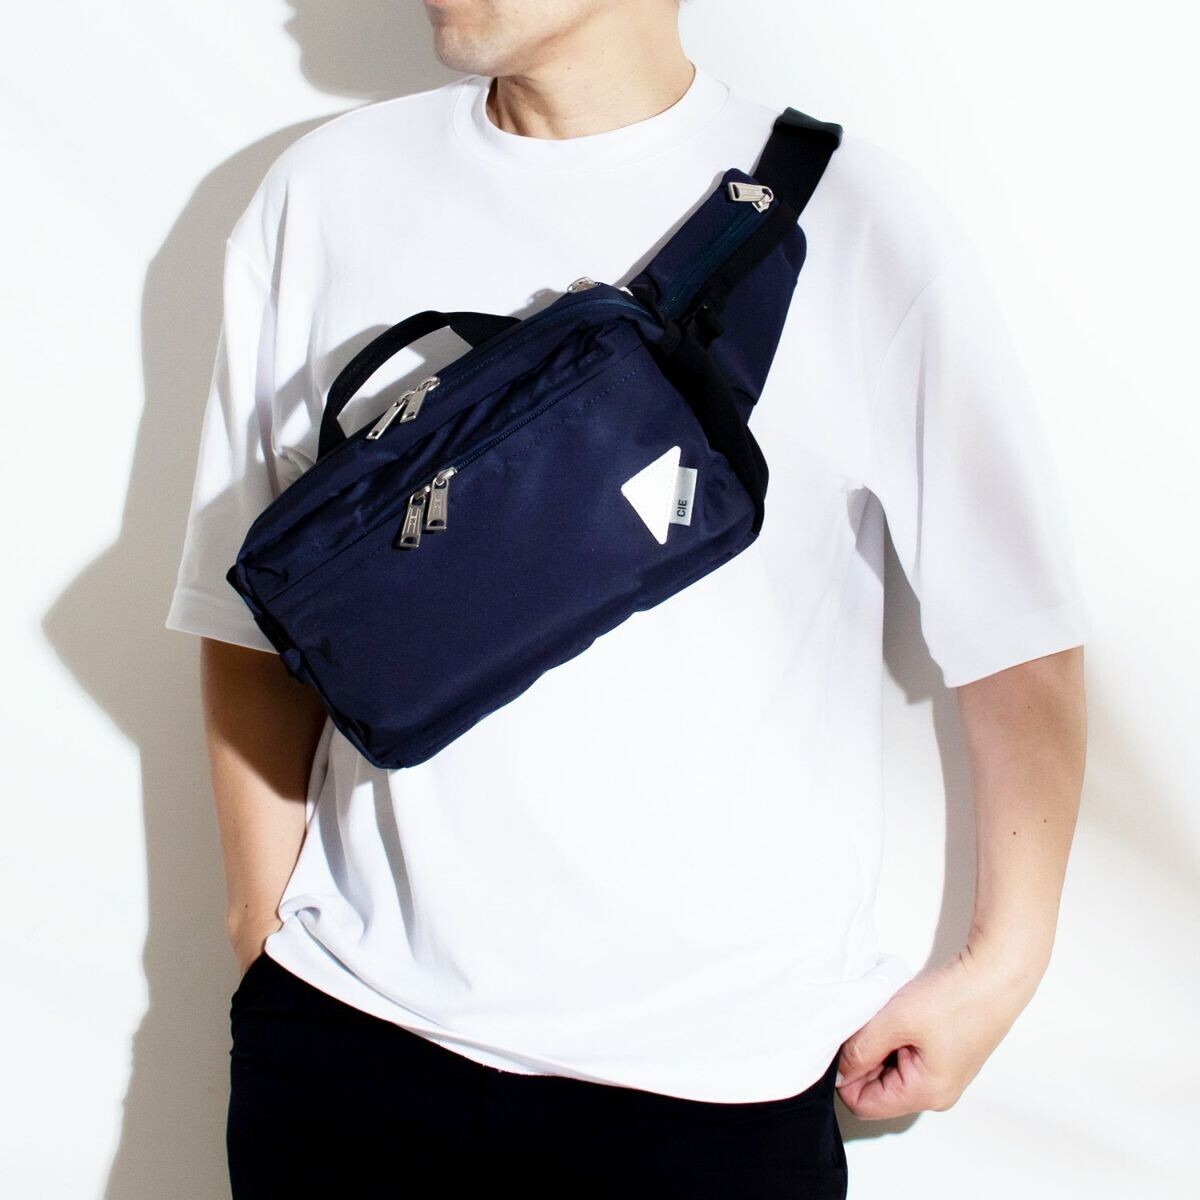 豊岡鞄「軽素材の鞄特集」　爽やかに使いこなす、軽量で涼しげな素材のバッグが大集合。